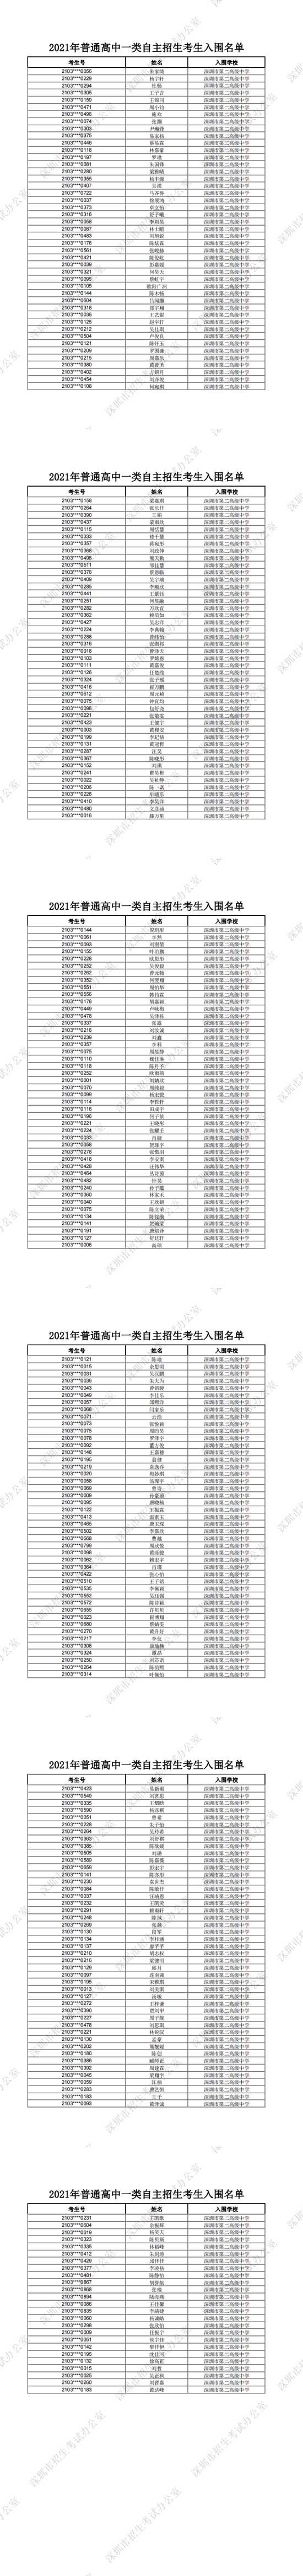 深圳市第二高级中学2021年普通高中一类自主招生考生入围名单一览